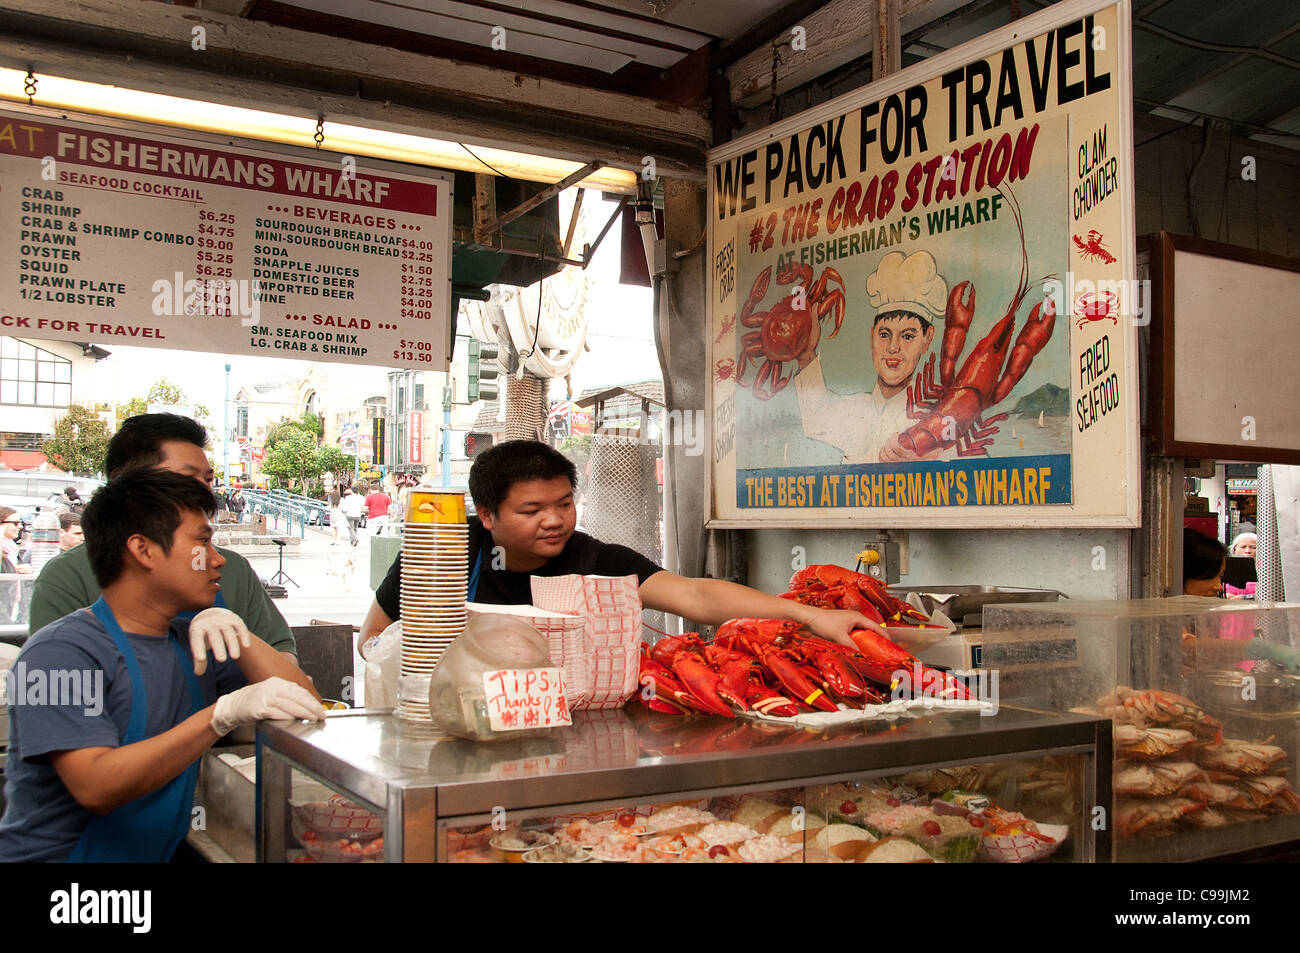 Fishermans Wharf Lobster Restaurant San Francisco Kalifornien Vereinigte StatesSan Fransisco California Vereinigte Staaten von Amerika Stockfoto